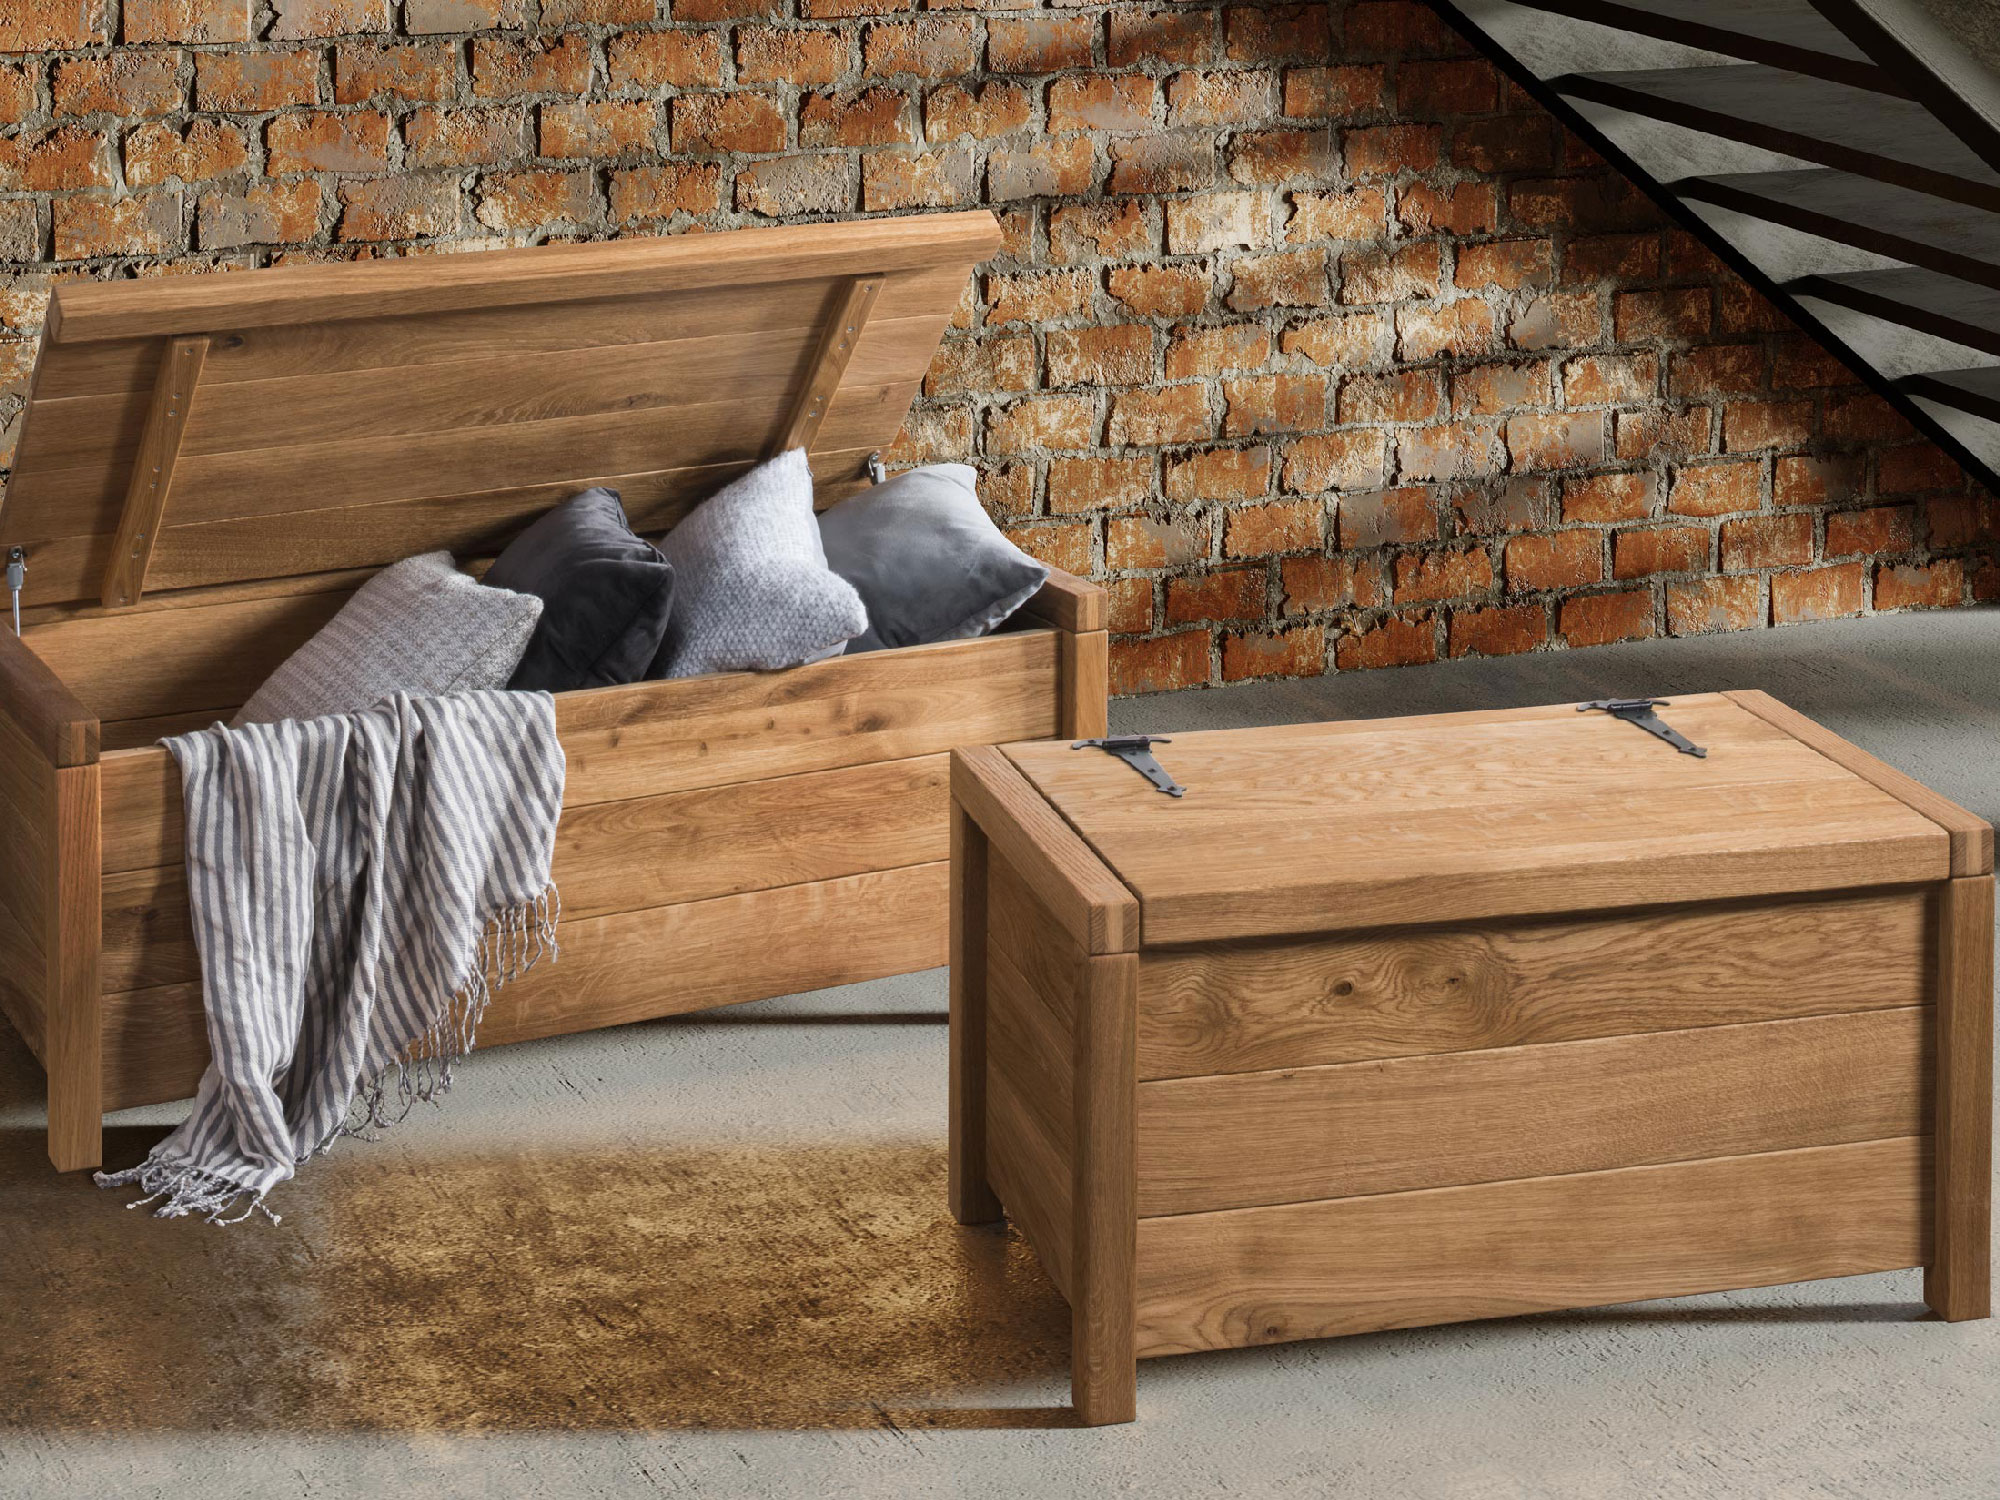 Skrzynia drewniana – nie tylko przechowywanie, ale też element dekoracyjny